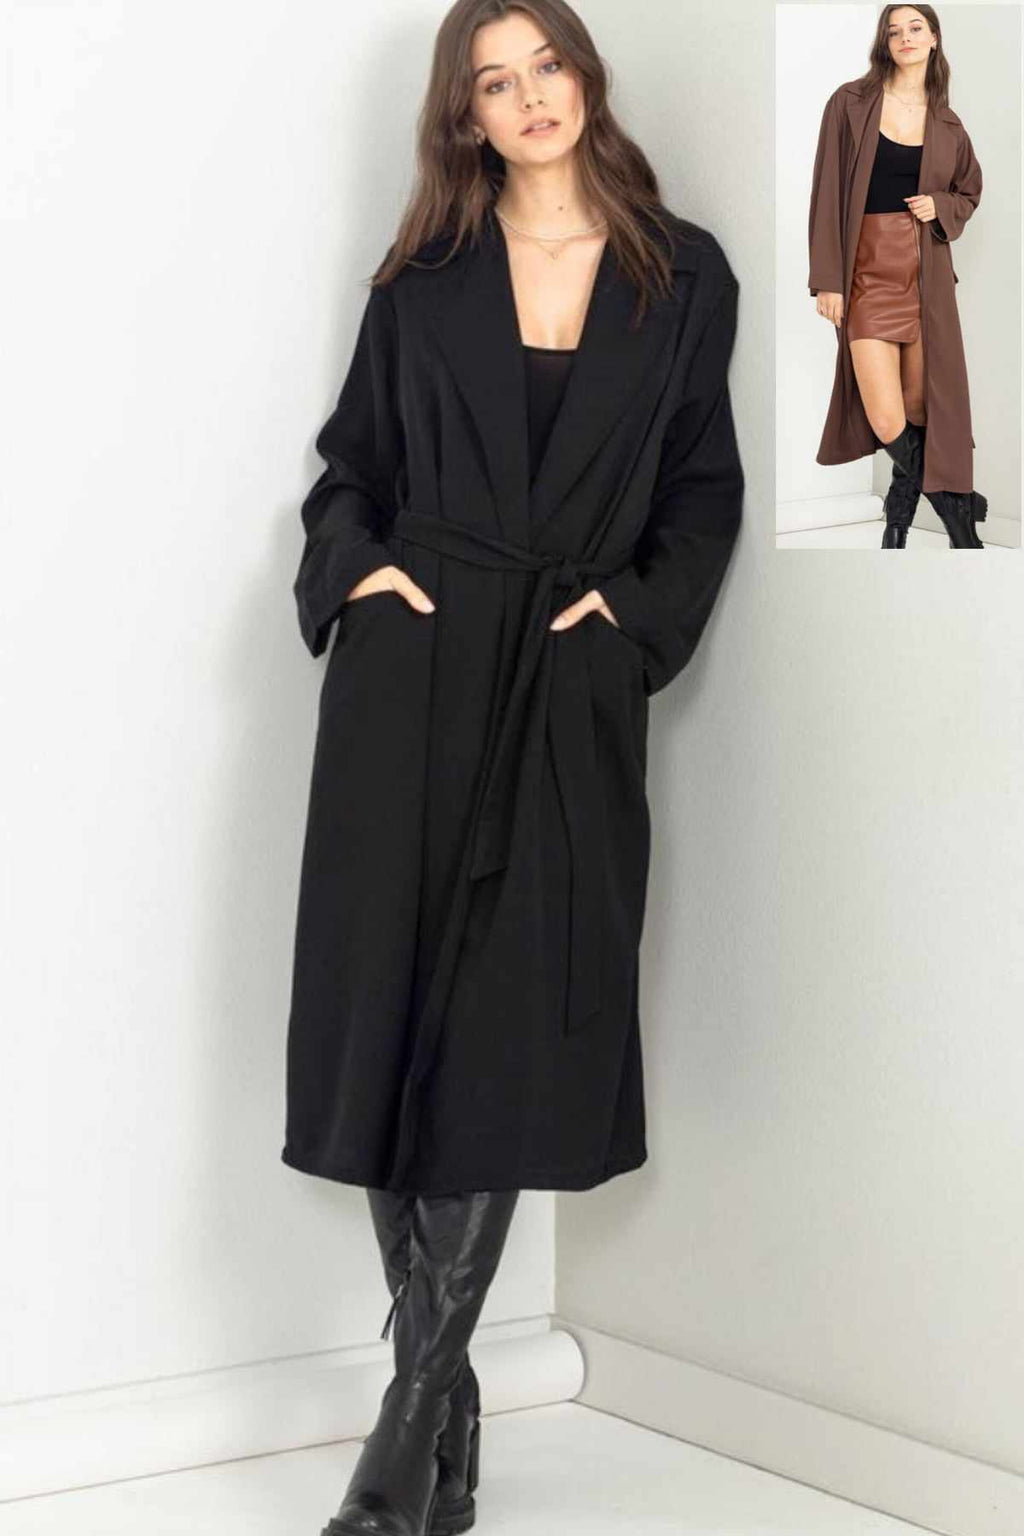 Astrid Trench Coat in Black & Dark Brown